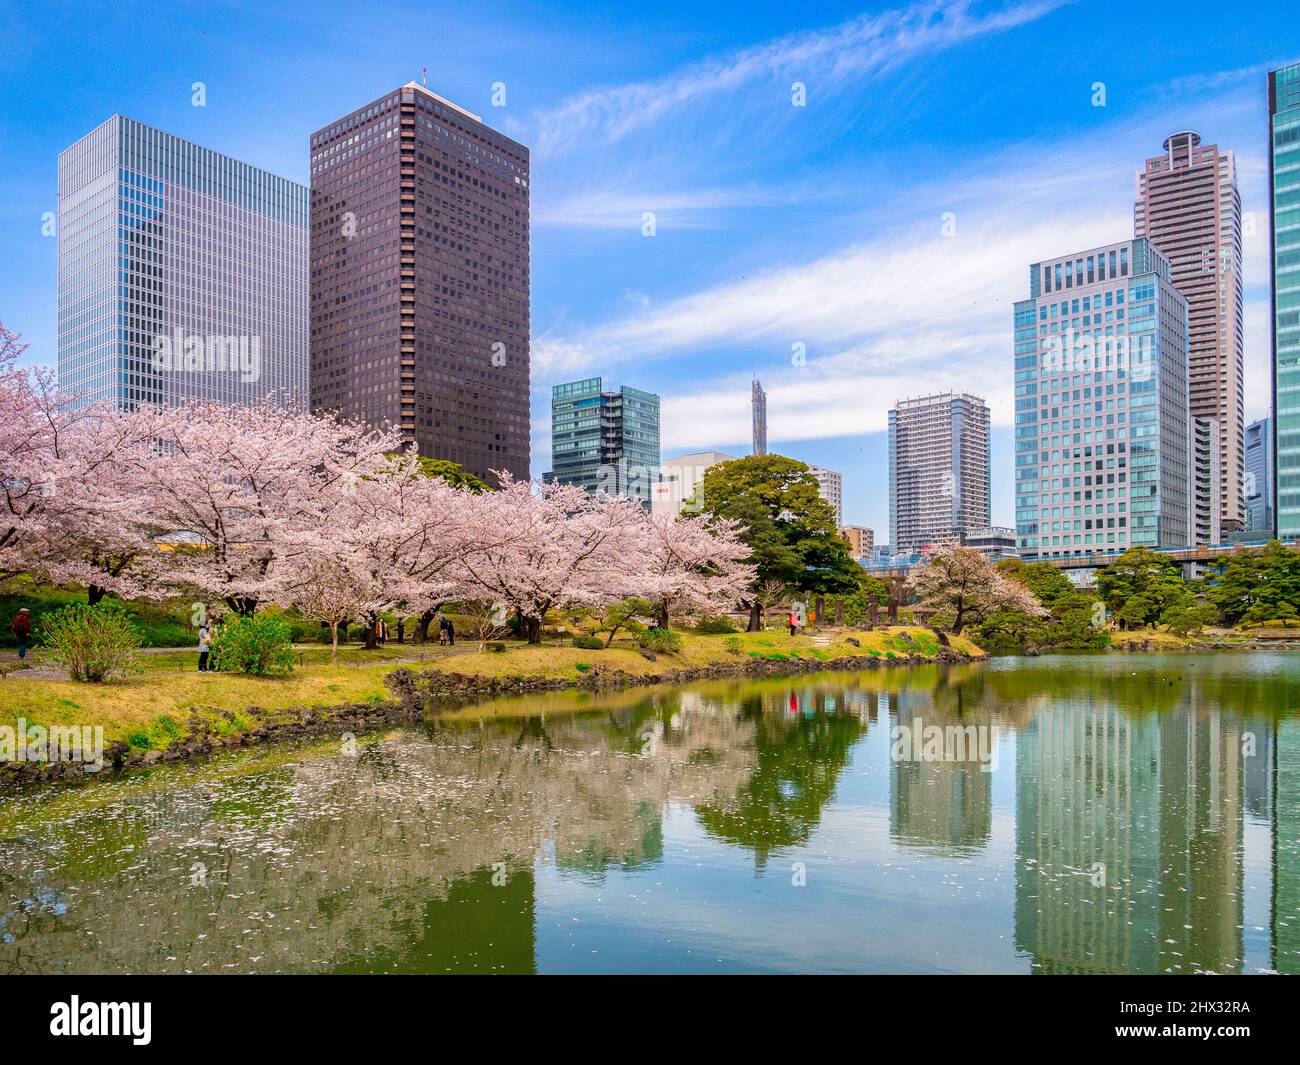 5 Aprile 2019: Tokyo, Giappone - Lago e ciliegia fioriscono nei Giardini Kyu-Shiba-rikyu, un giardino paesaggistico in stile tradizionale nel centro di Tokyo. Foto Stock